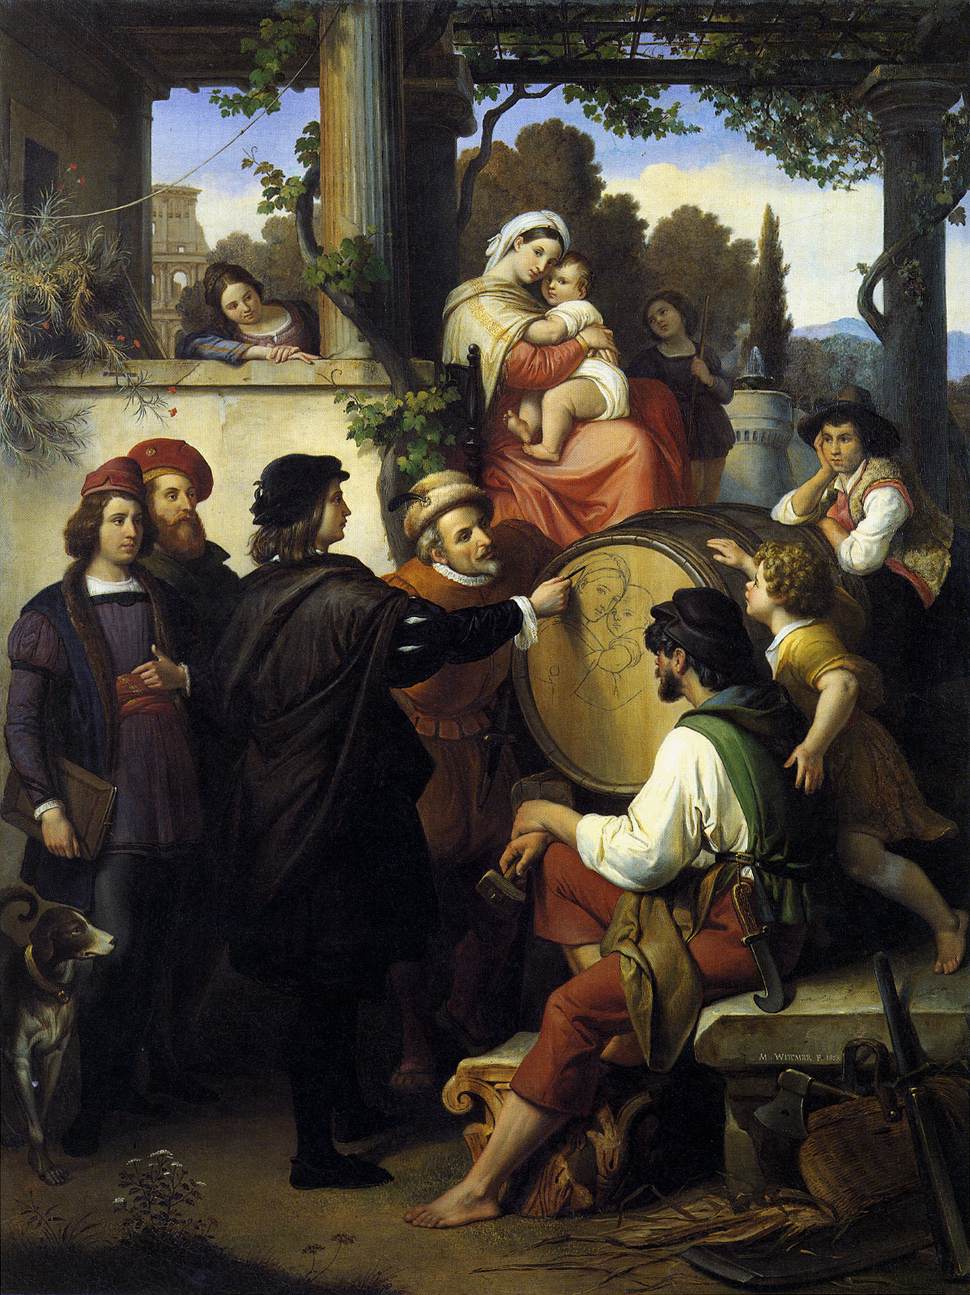 Raphael's First Sketch of 'La Virgen de la Sedia'